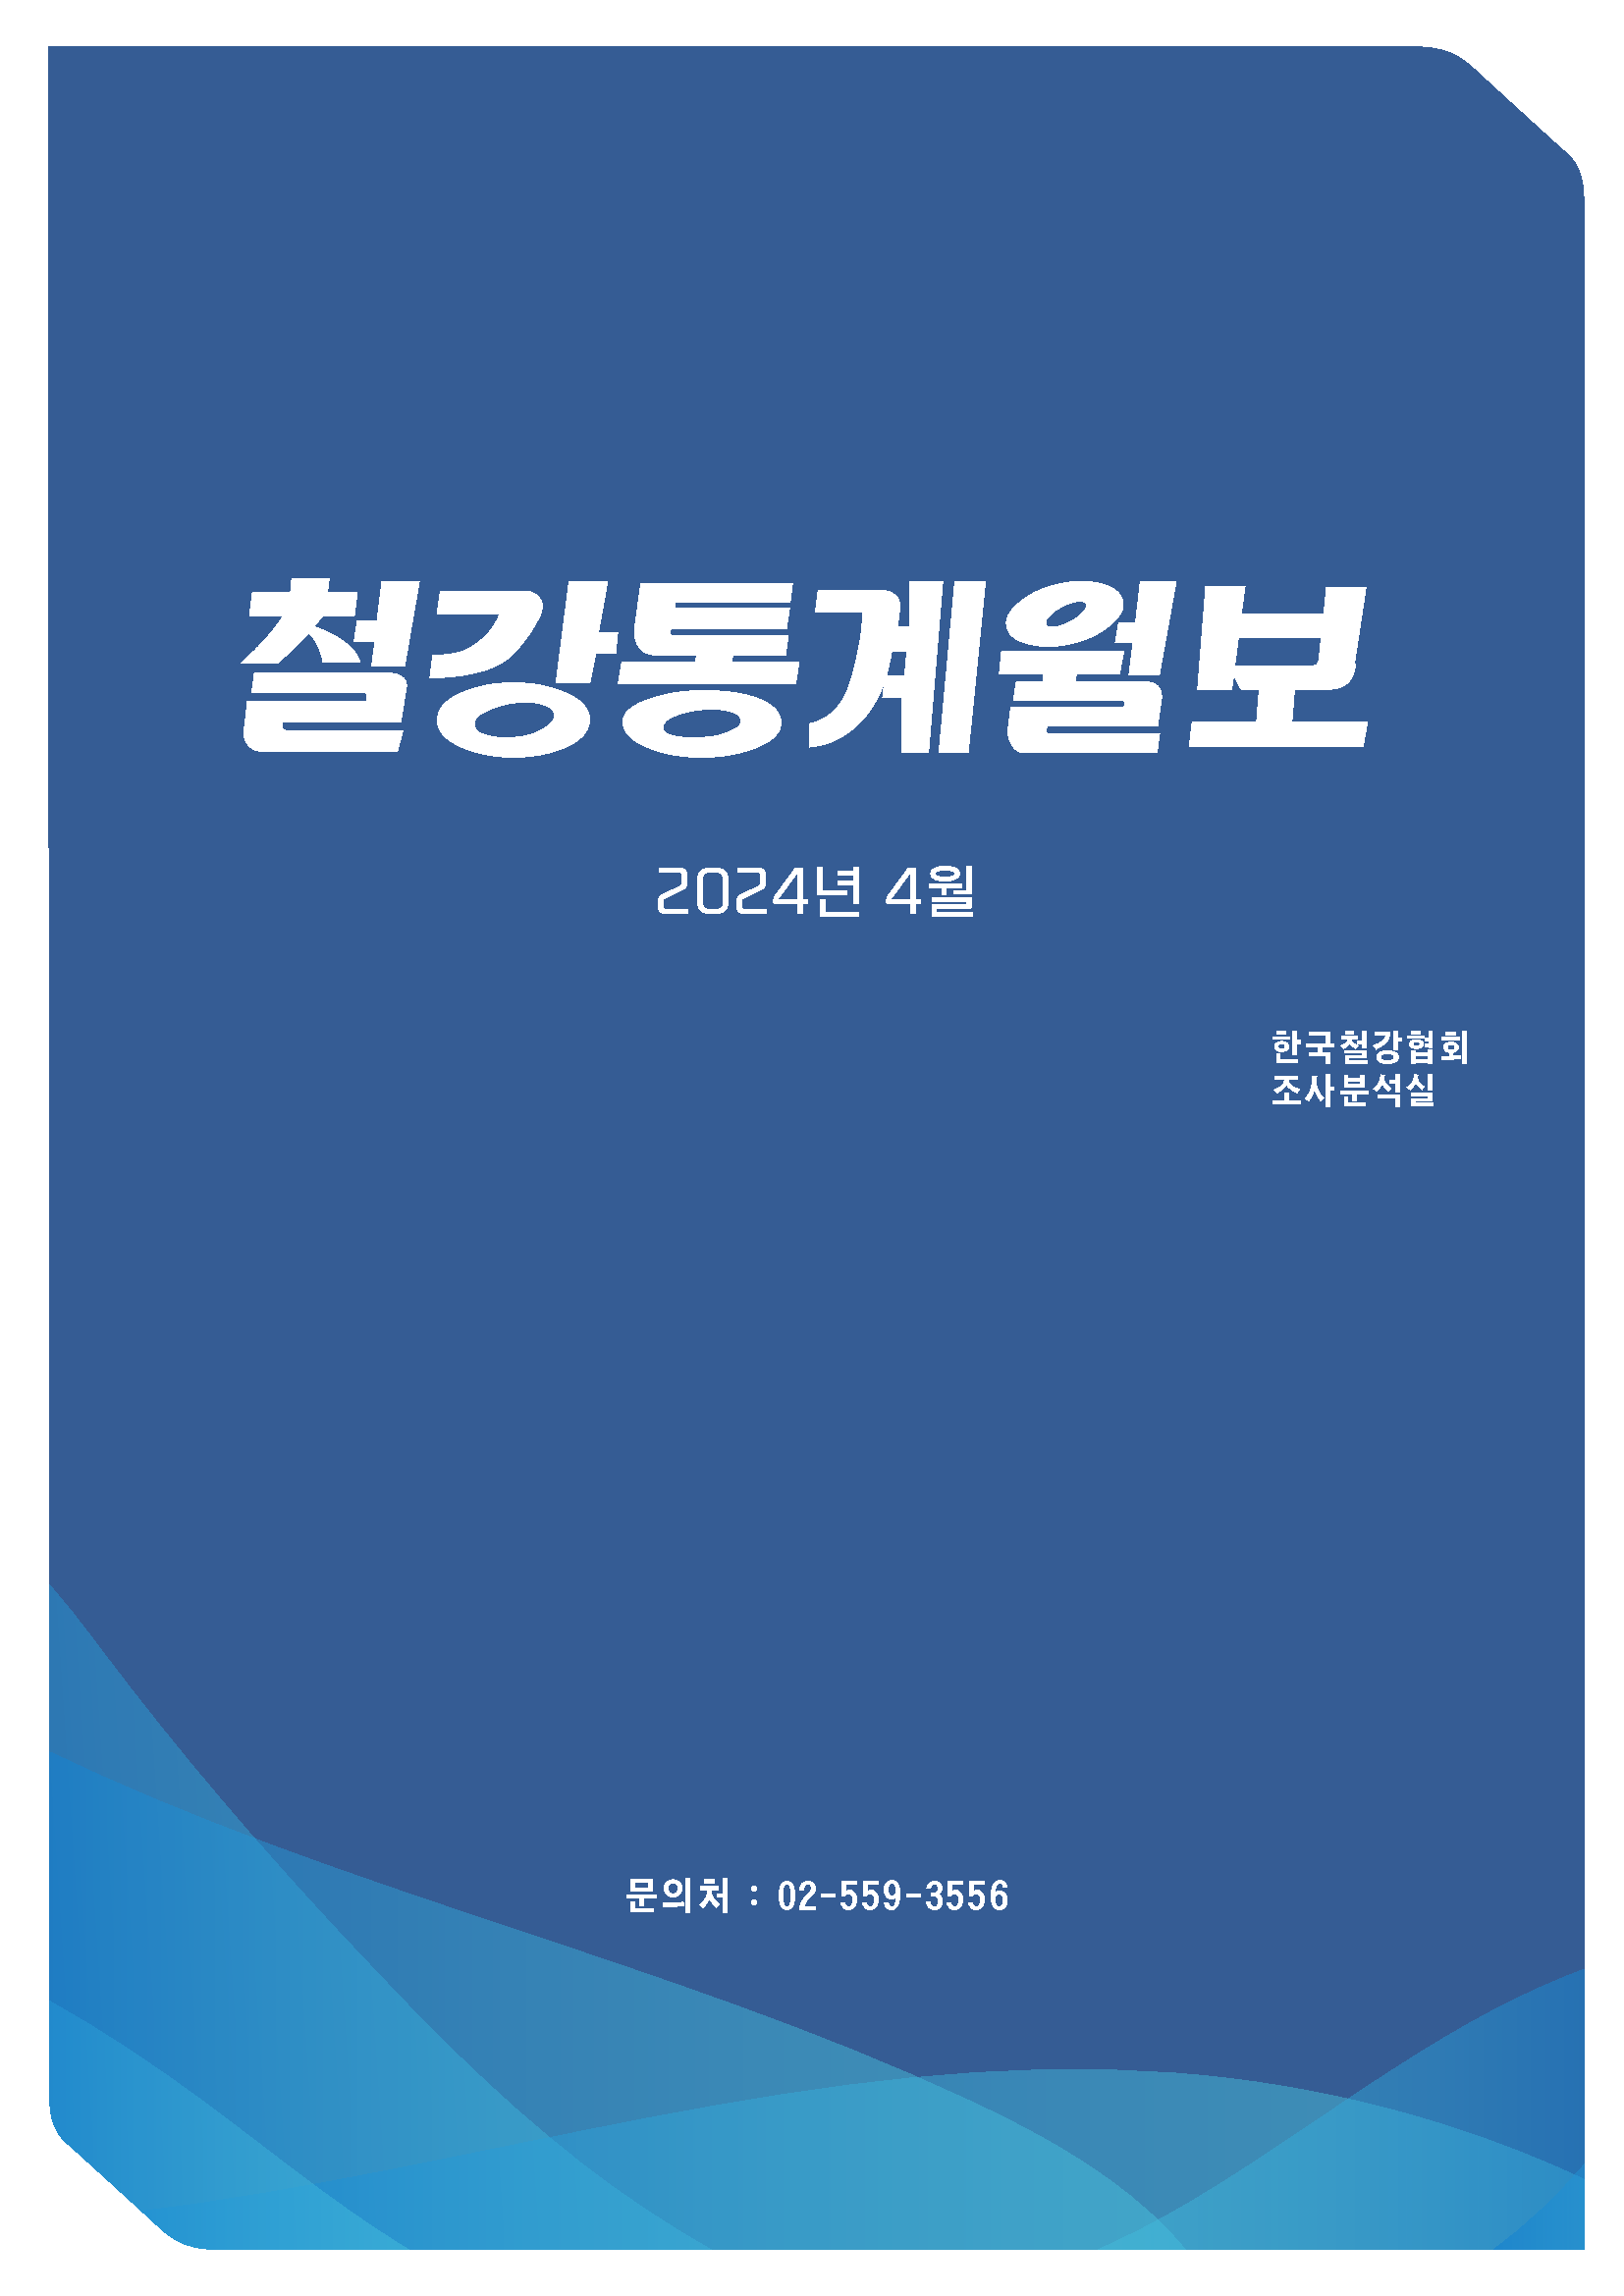 [철강통계월보] 2024-4월호